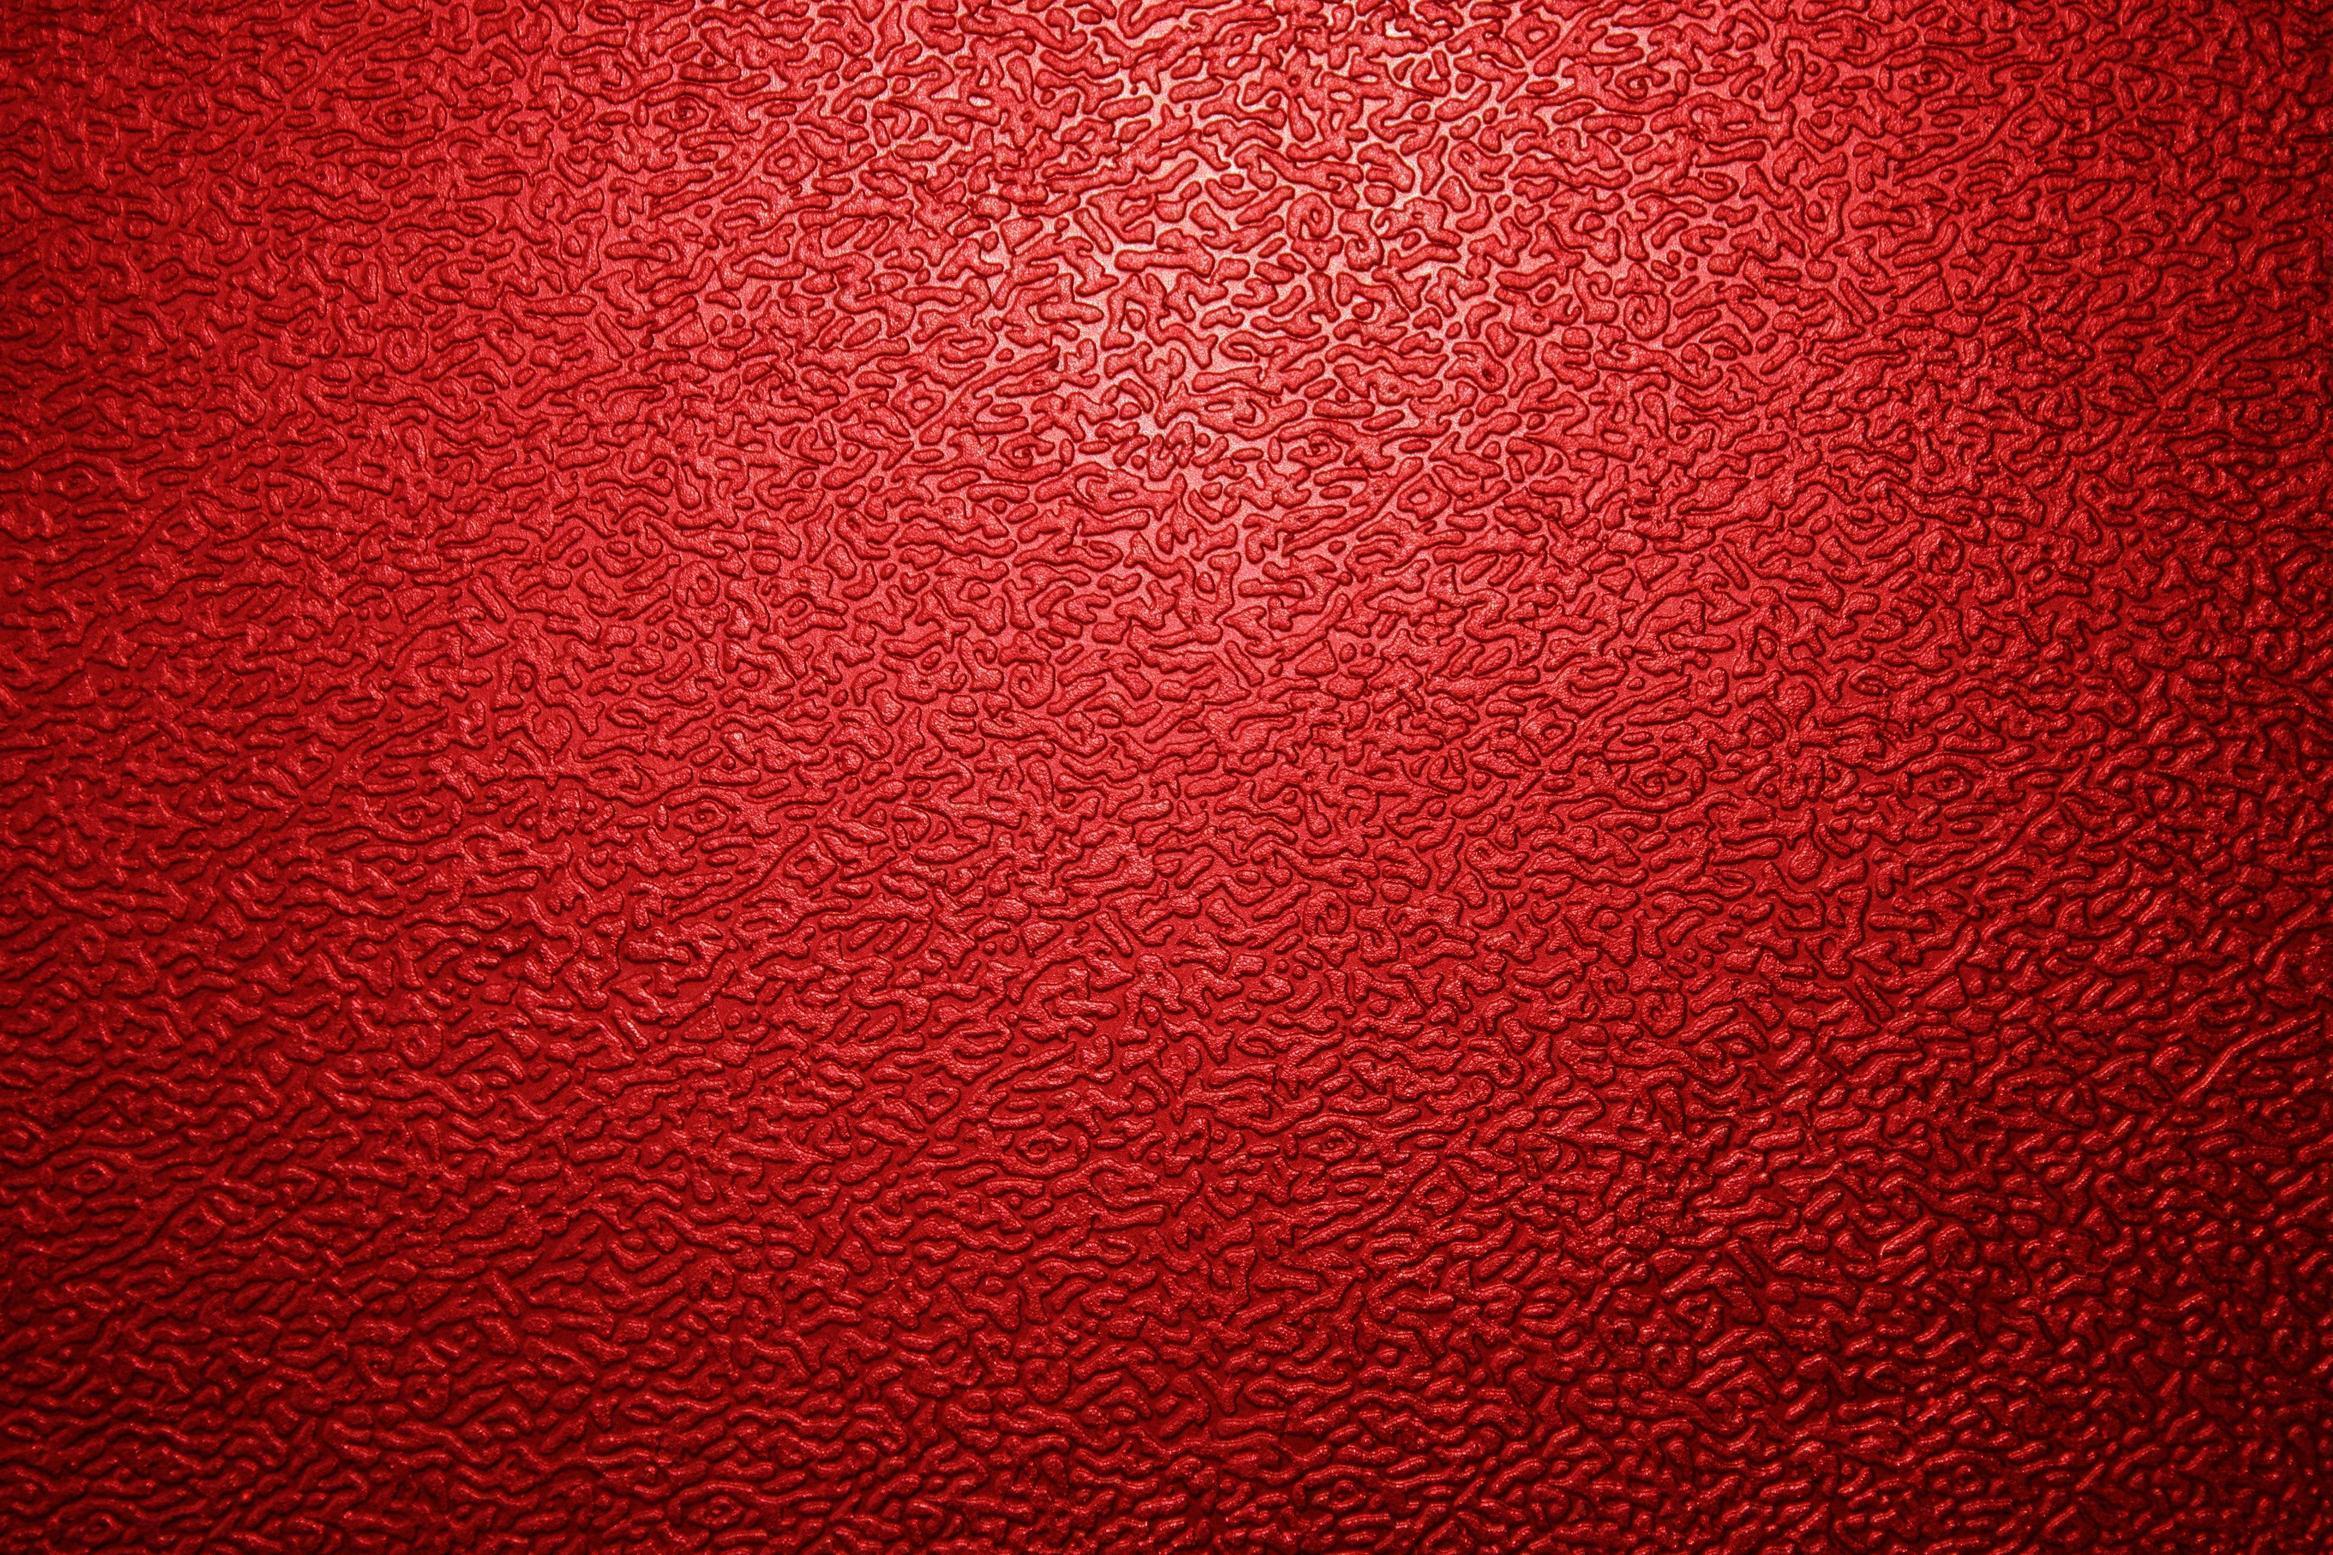 Crisp Red Wallpaper For Desktop, Laptop and Tablet Devices